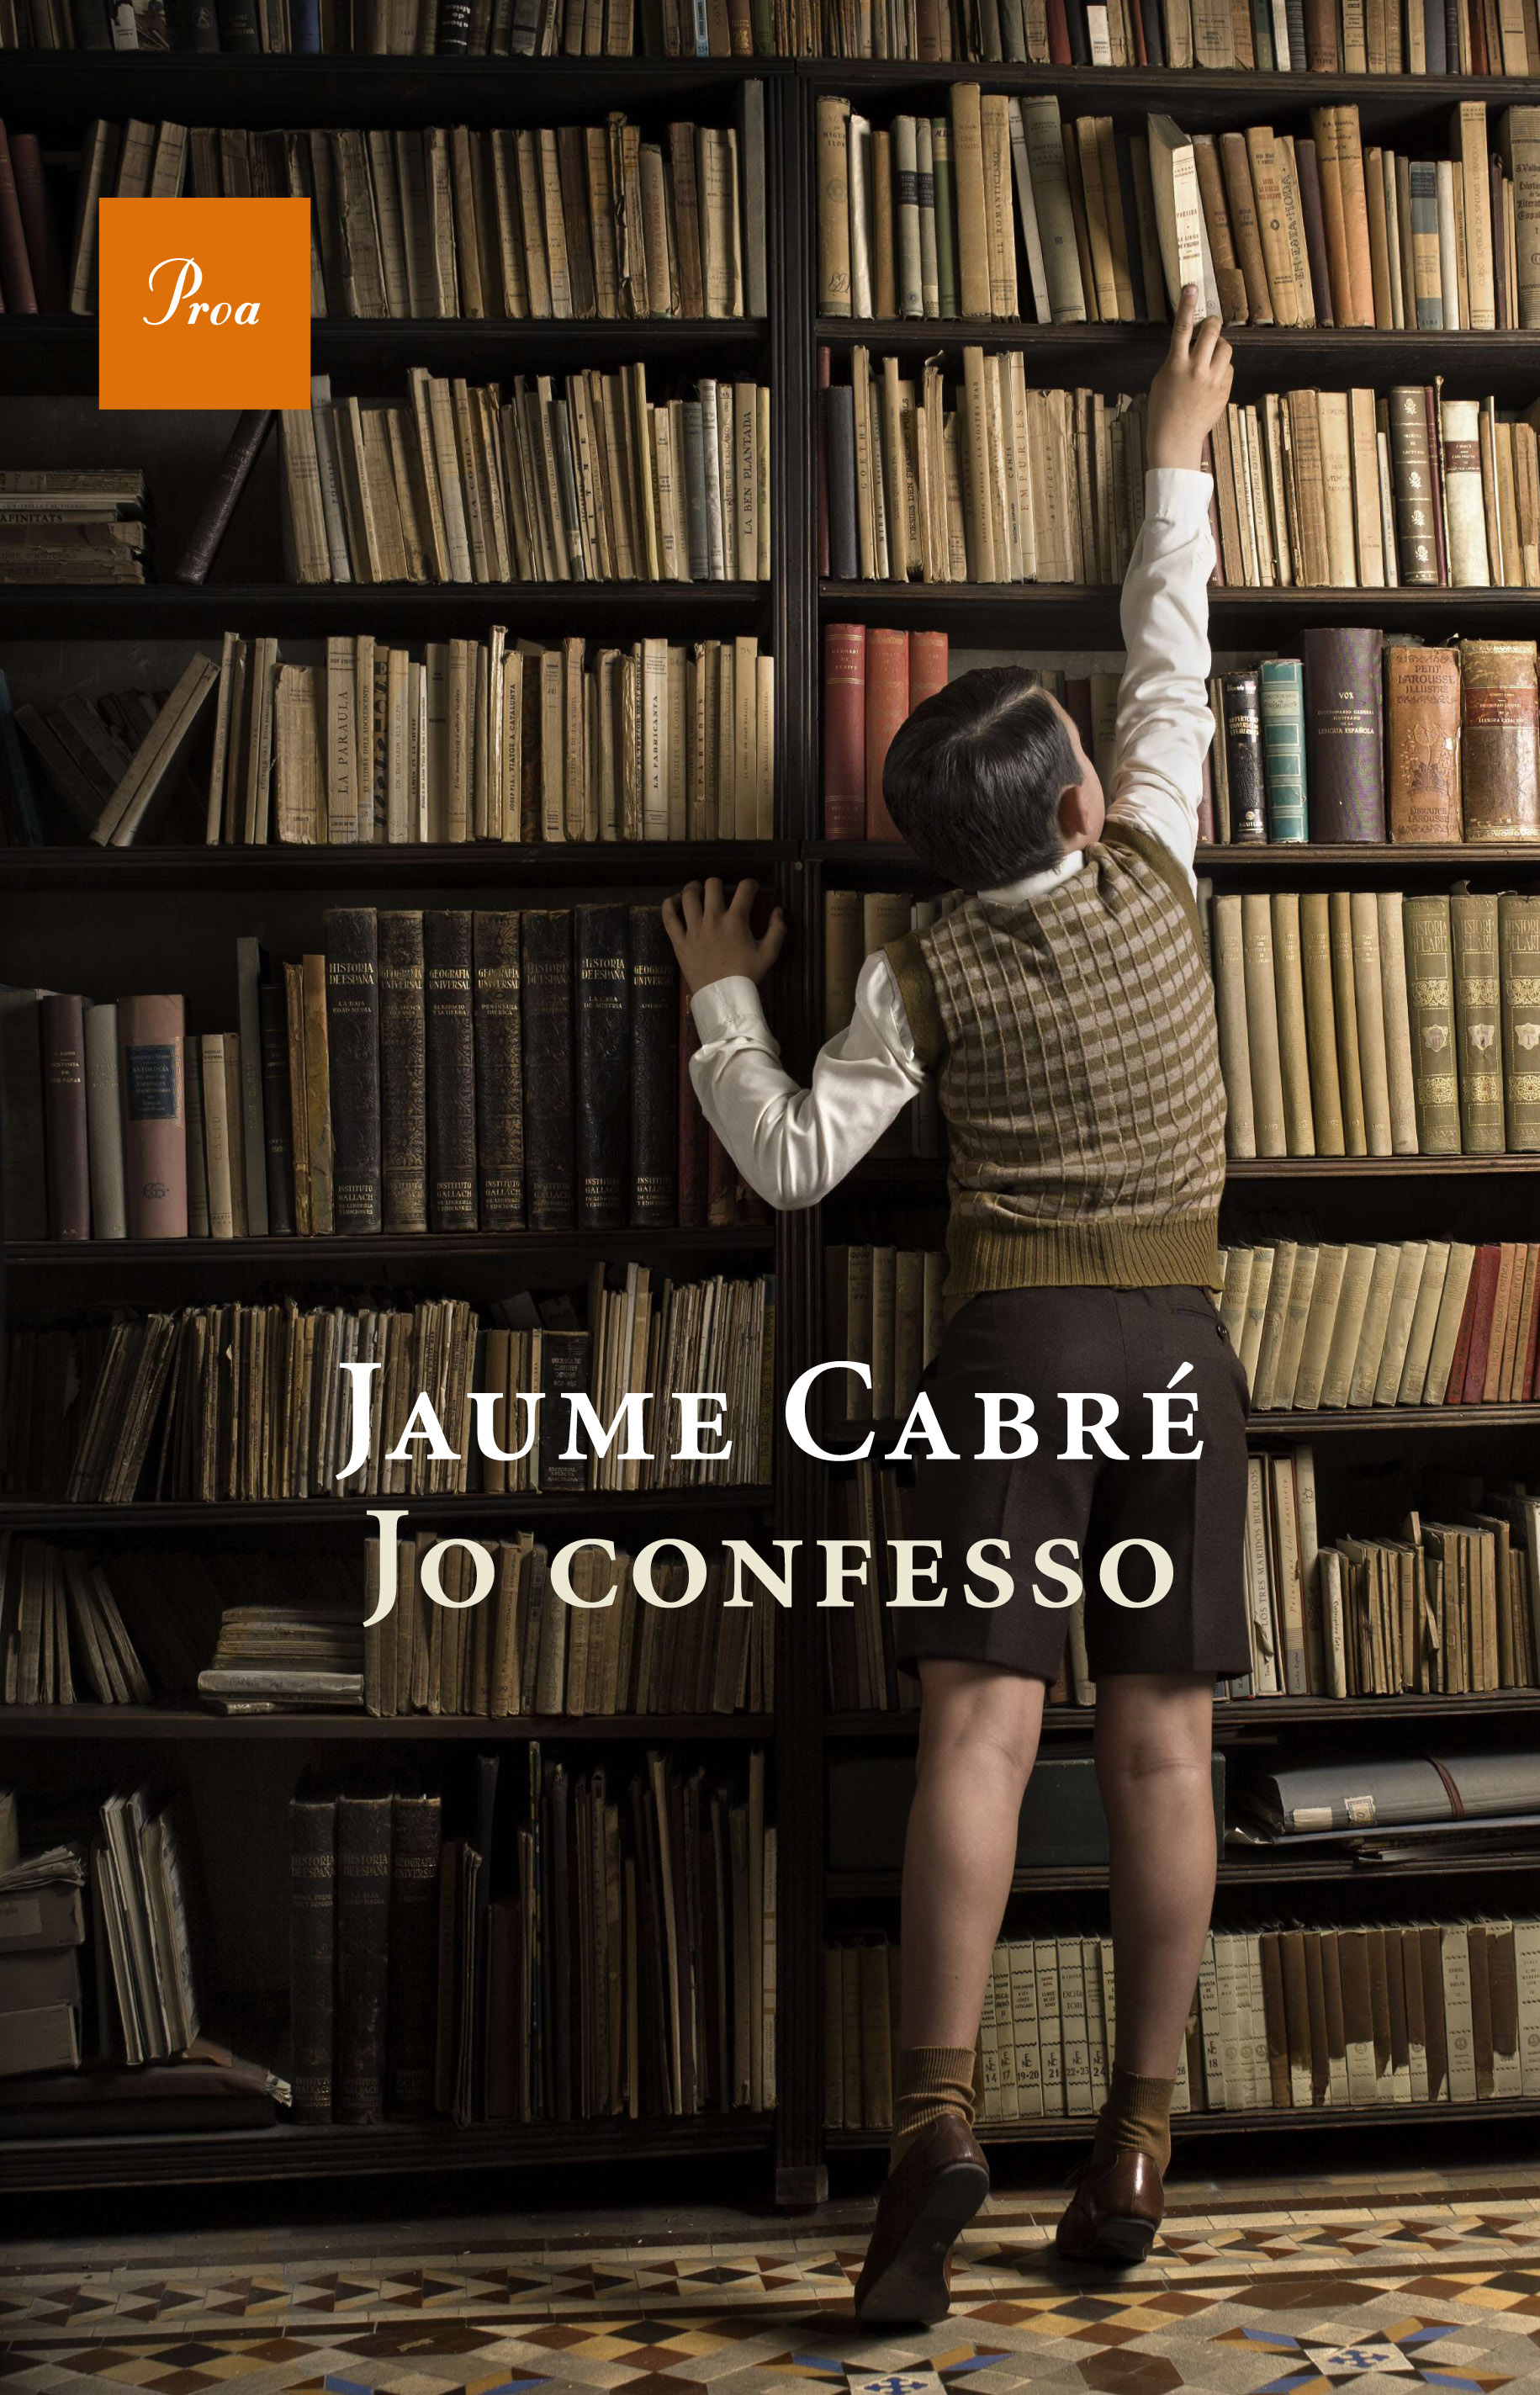 Jo Confesso (Ed. Proa, 2011)